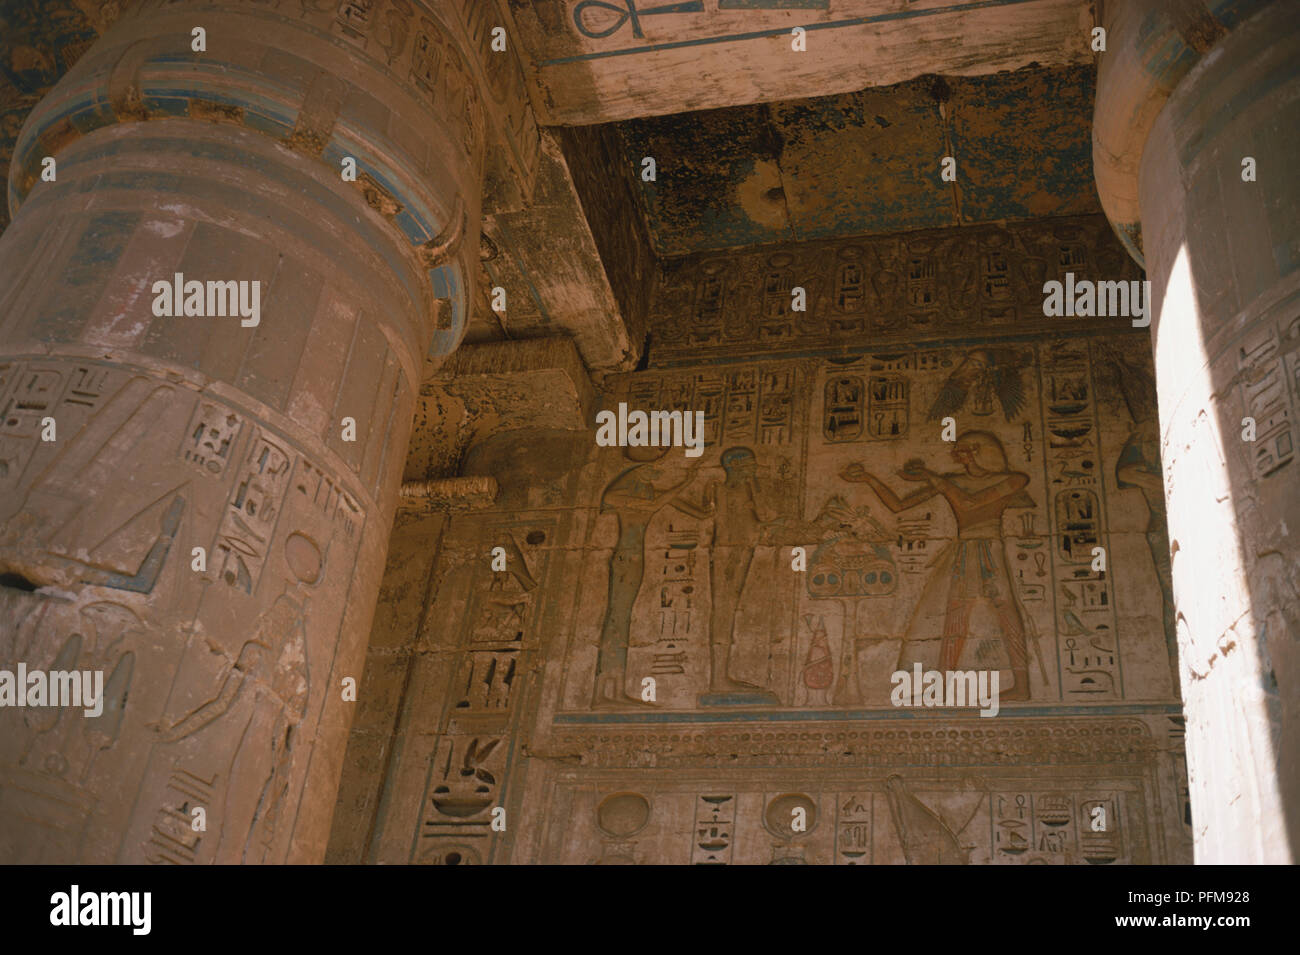 Egipto, elaboradamente pintado las paredes y columnas talladas en el interior del Templo de Ramsés III en Medinet Habu, en la antigua capital egipcia de Tebas. Foto de stock